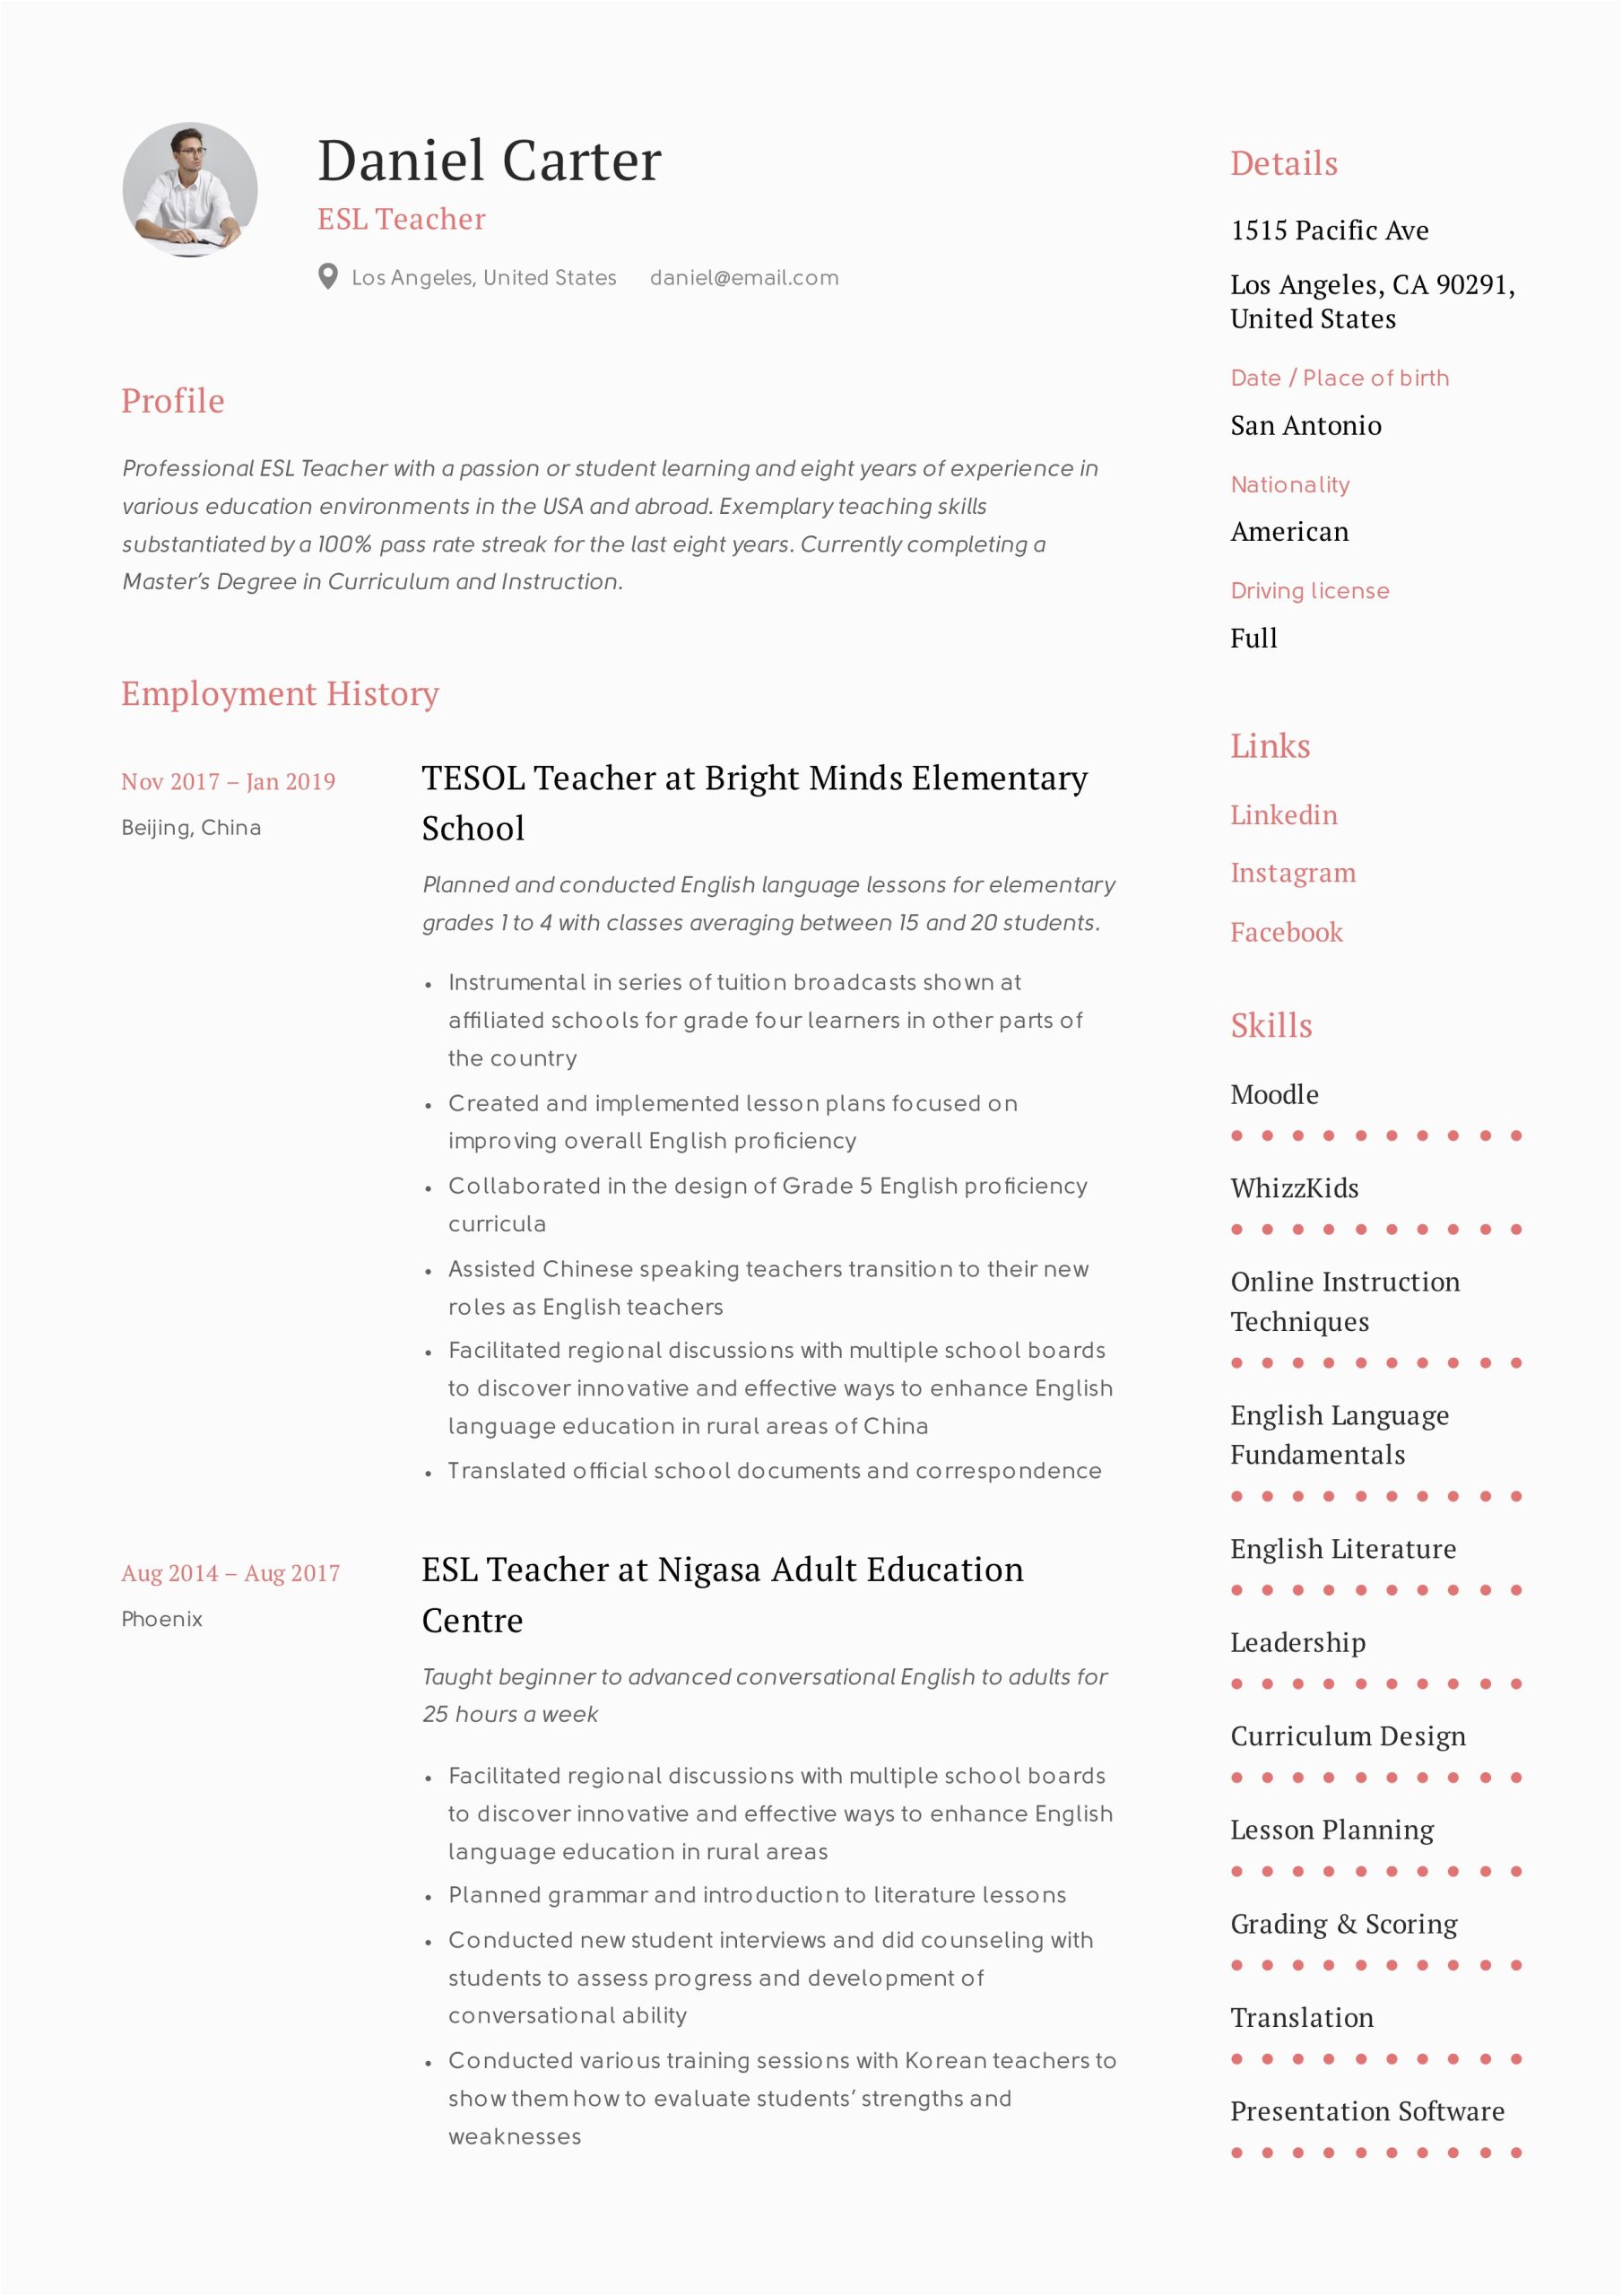 Sample Resume Objective for Esl Teacher Resumes for Esl Teachers Free Resume Templates